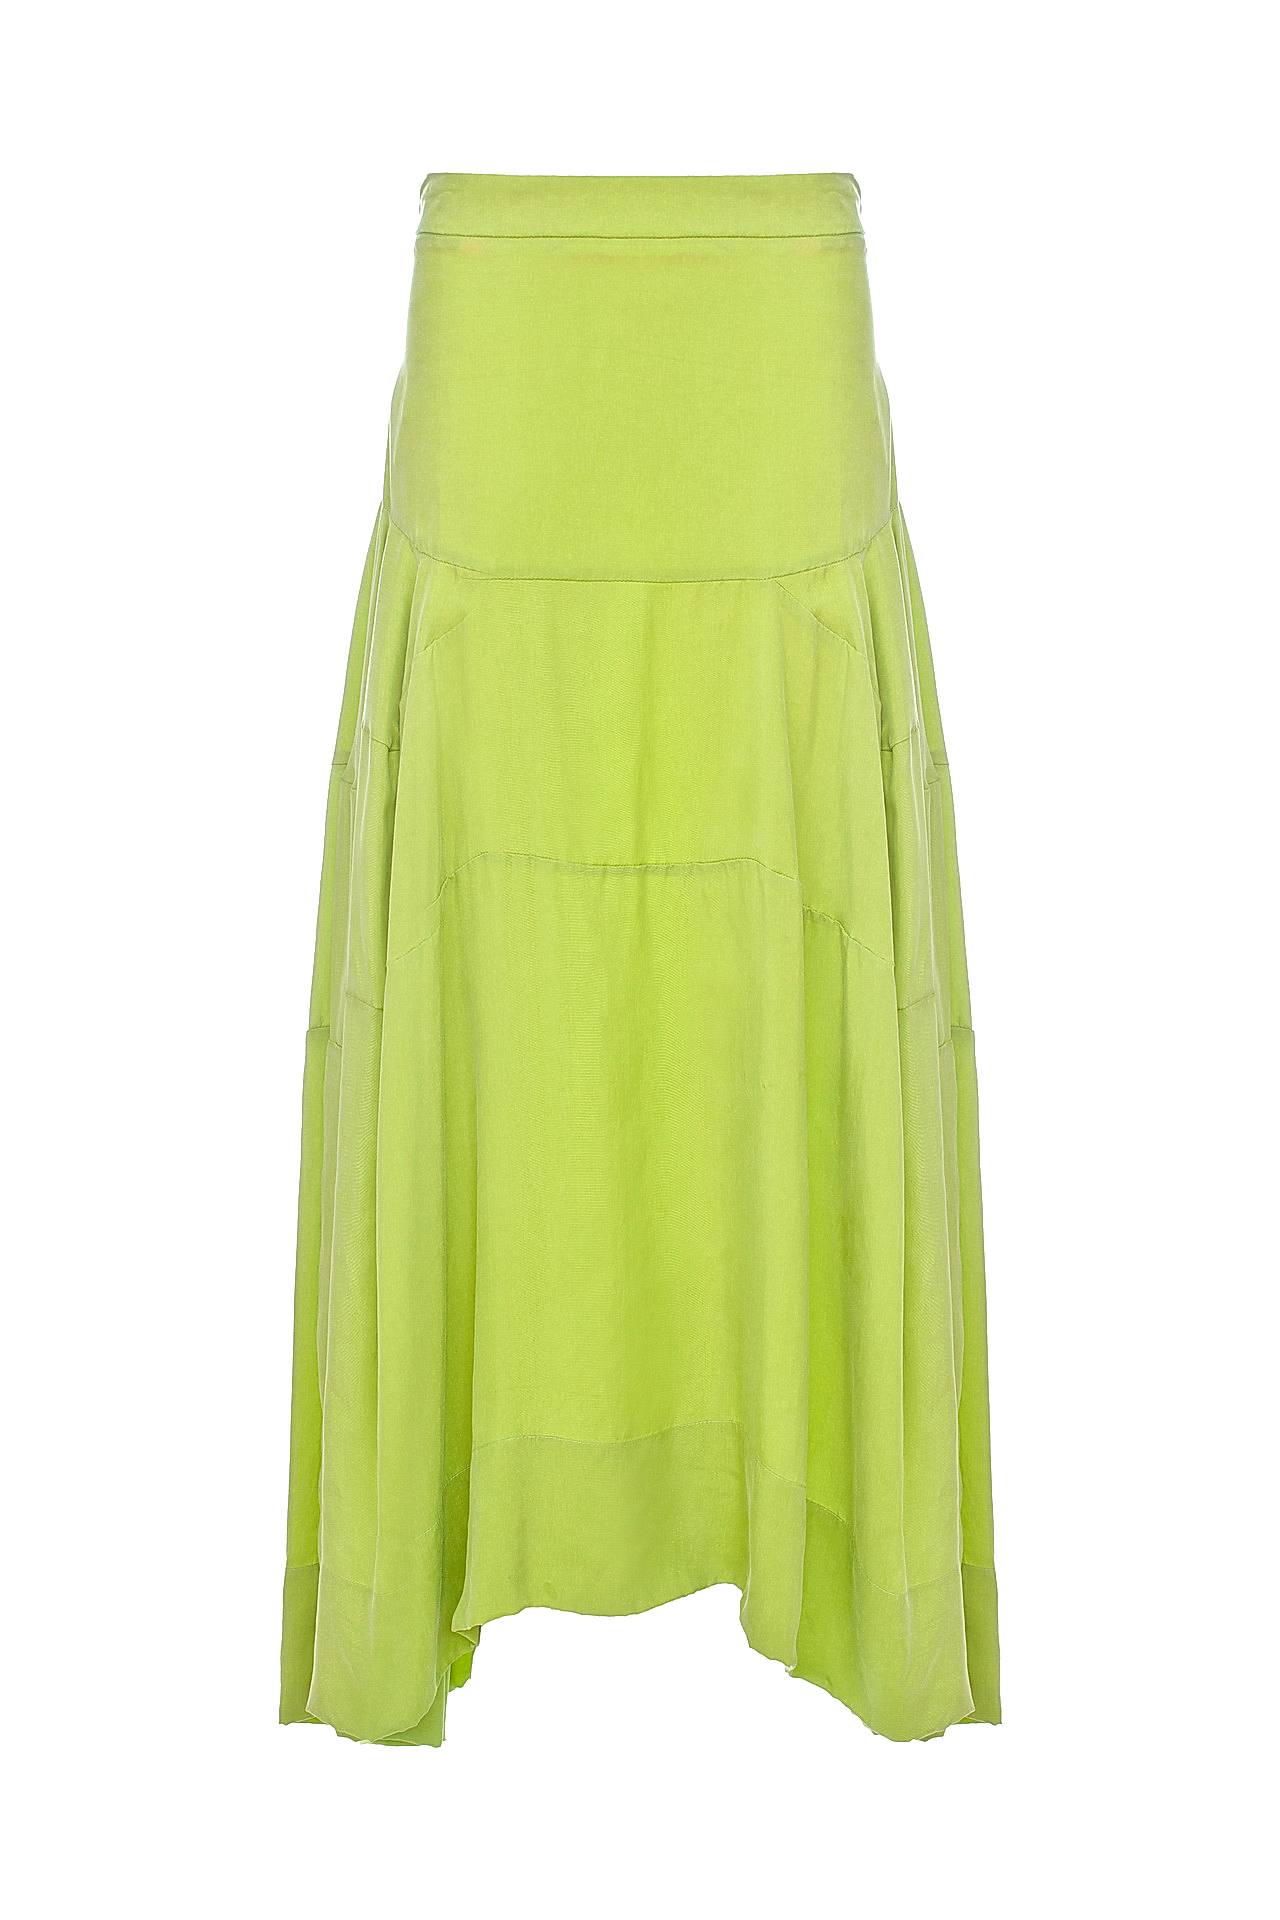 Одежда женская Юбка V.Westwood (4084625/13.1). Купить за 12950 руб.